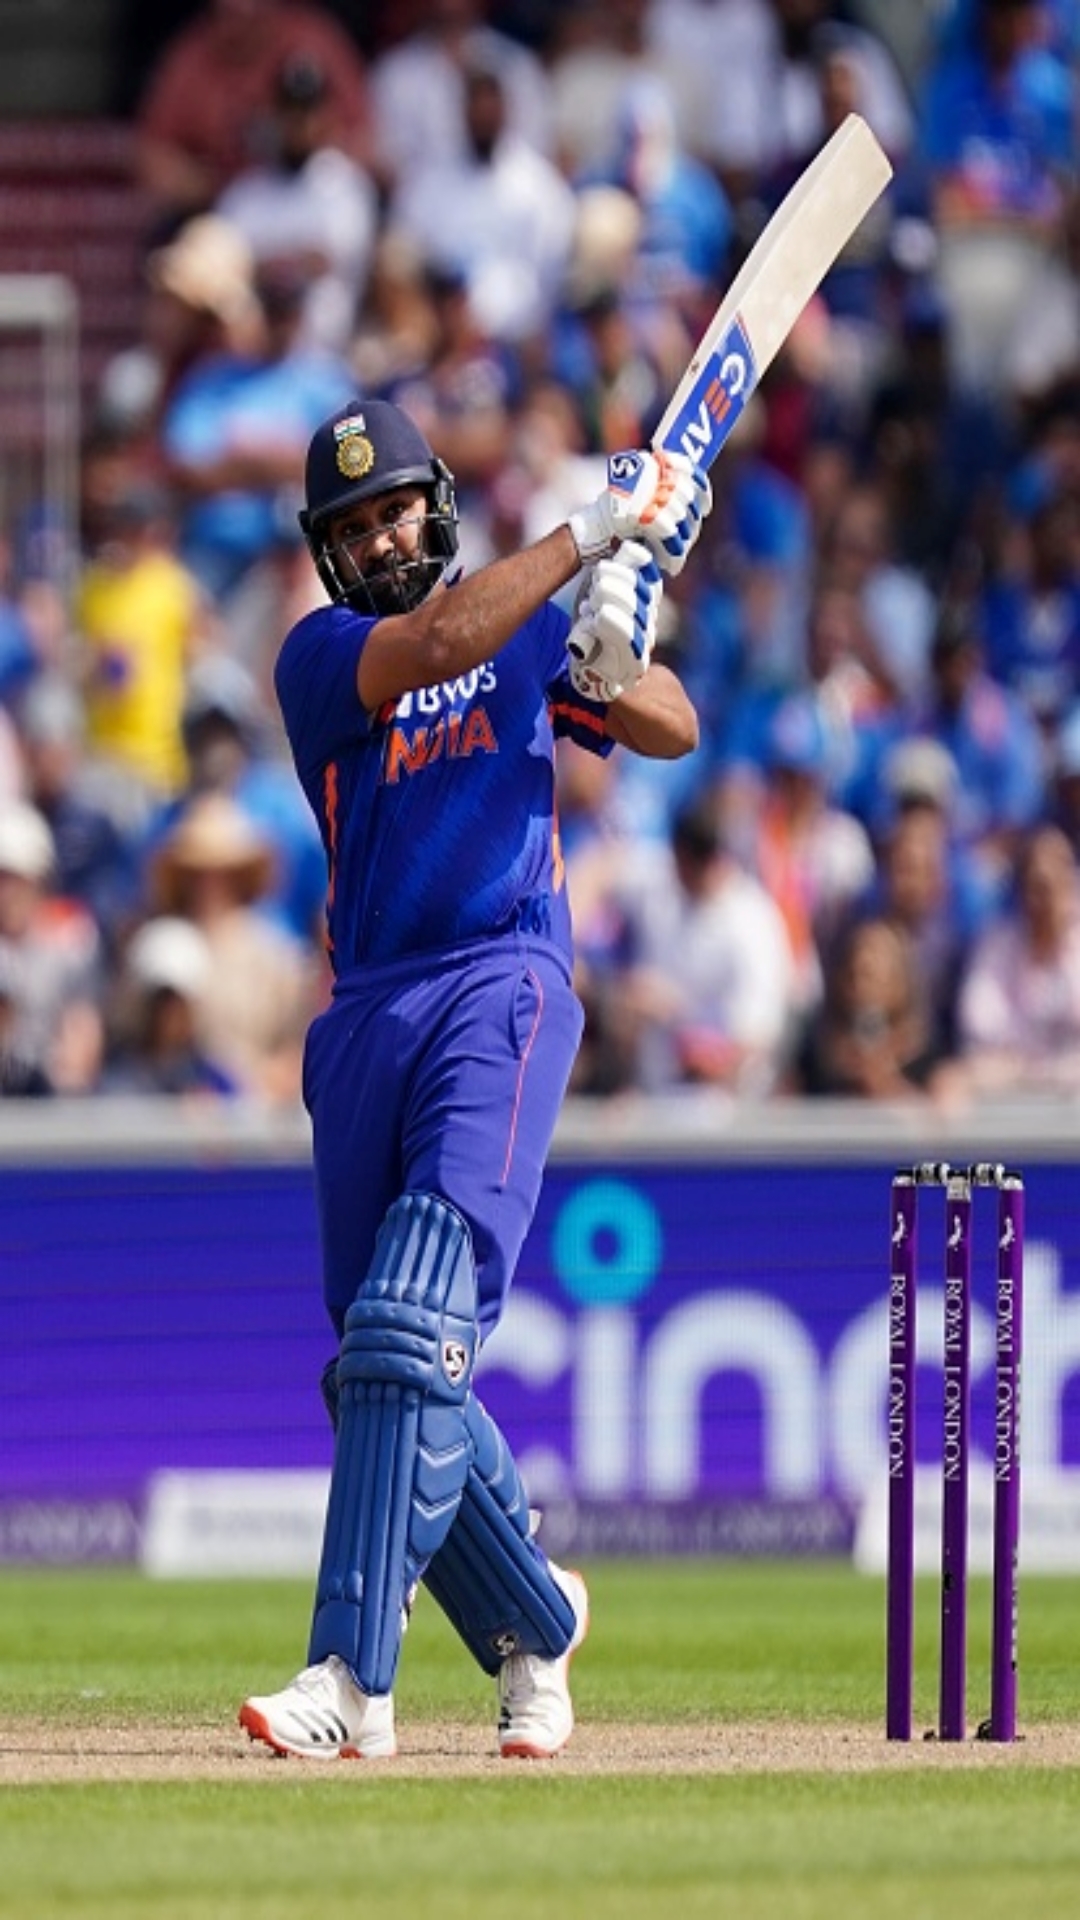 वनडे क्रिकेट में सर्वाधिक जीत प्रतिशत रखने वाले टॉप 5 भारतीय कप्तान